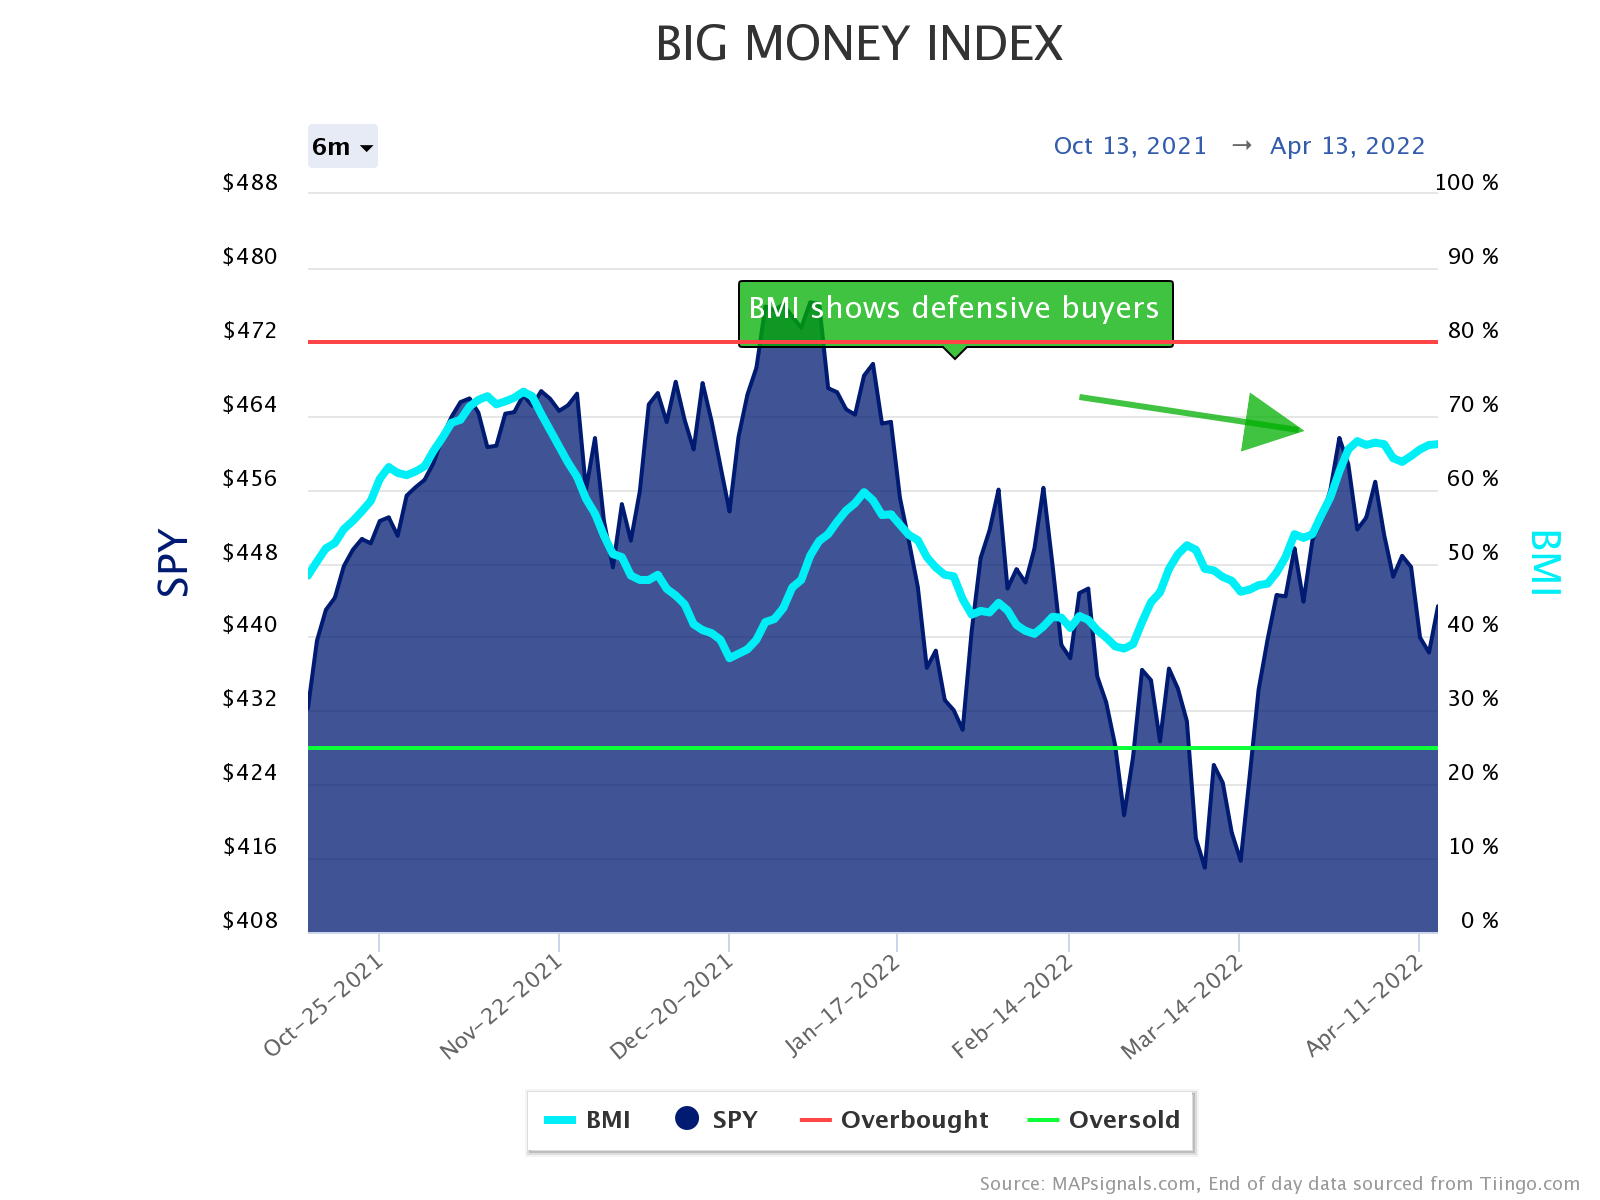 Big Money Index (BMI) shows defensive buyers